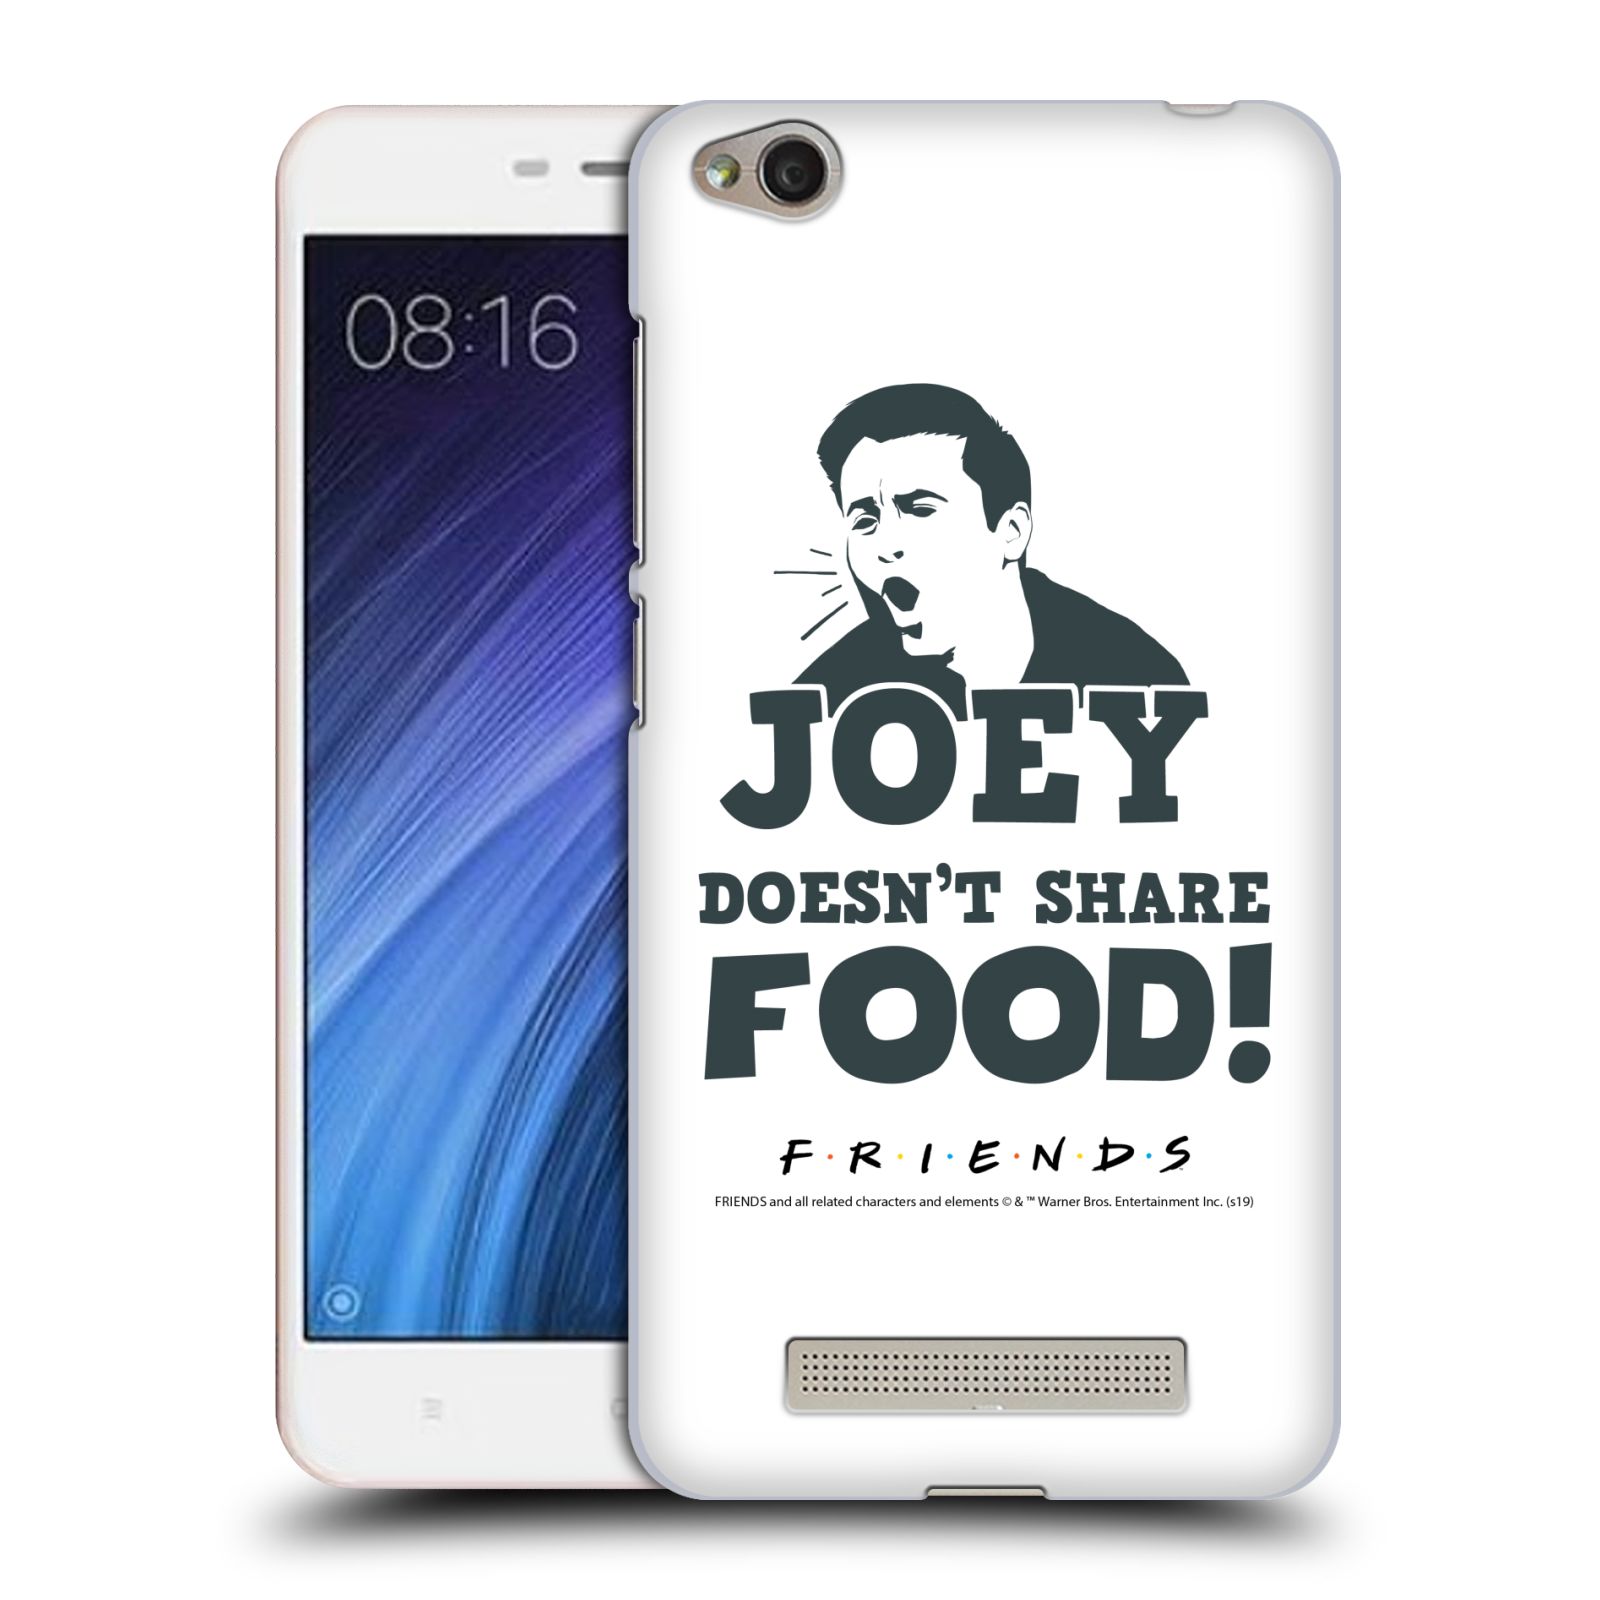 Pouzdro na mobil Xiaomi Redmi 4a - HEAD CASE - Seriál Přátelé - Joey se o jídlo nedělí